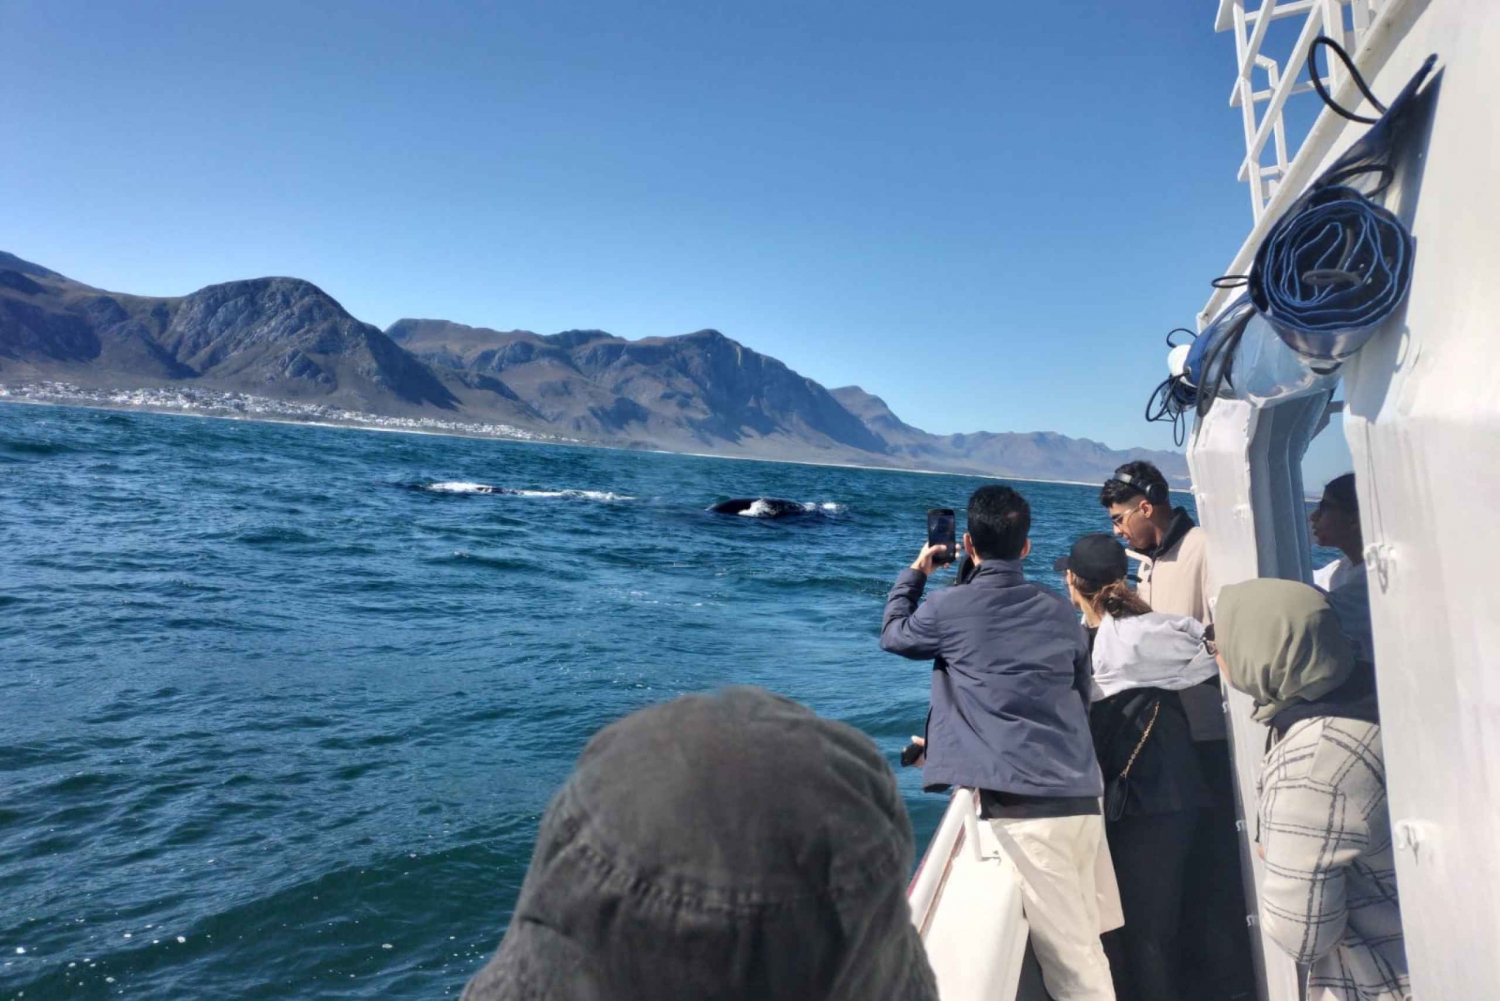 Tour particular para Hermanus - Observação de baleias (reserve agora!)